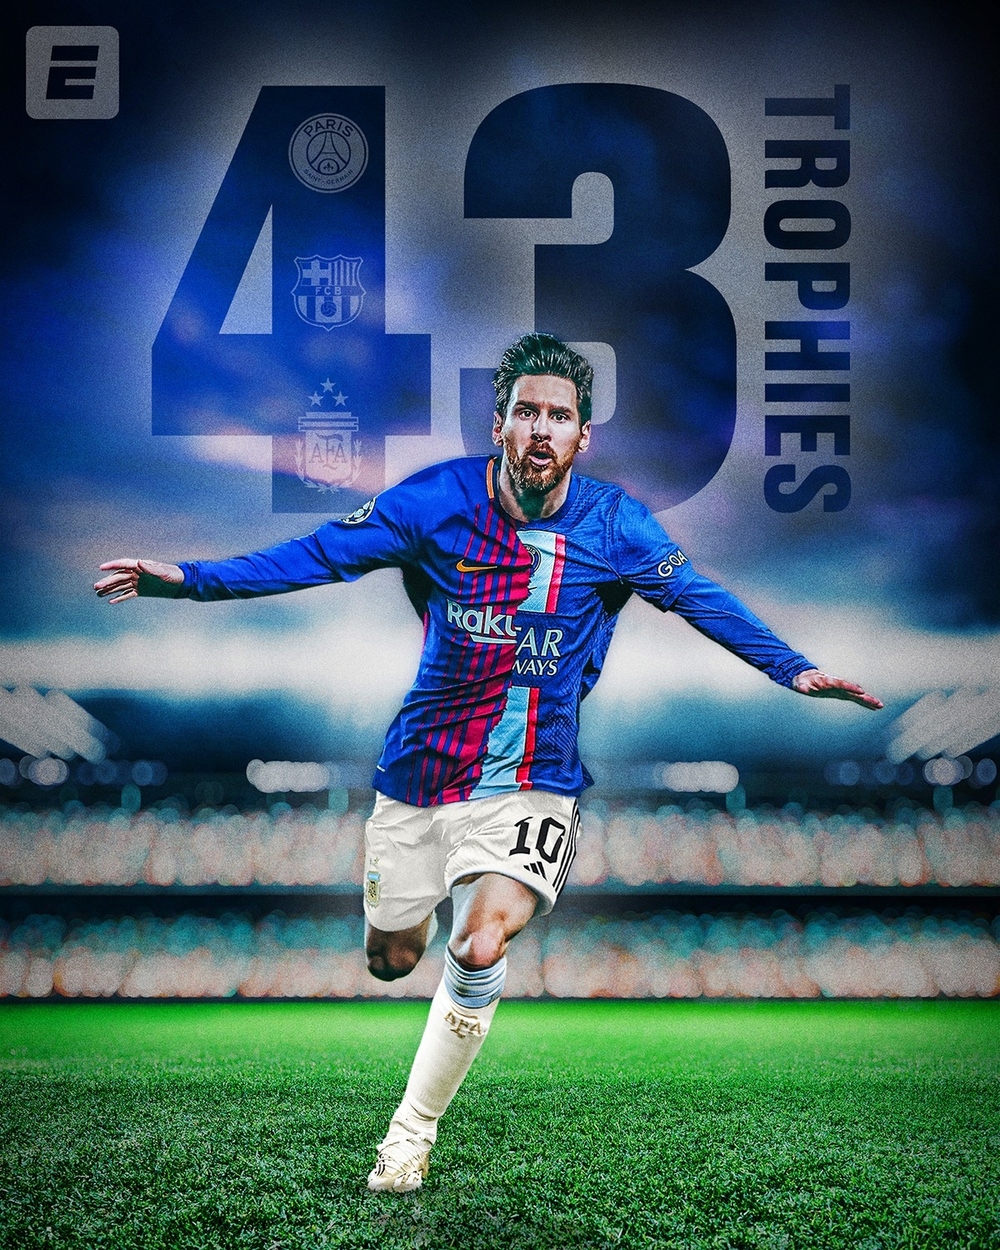 Biếm họa 24h: Messi mang theo bộ sưu tập danh hiệu đồ sộ sang Mỹ chơi bóng - Ảnh 2.